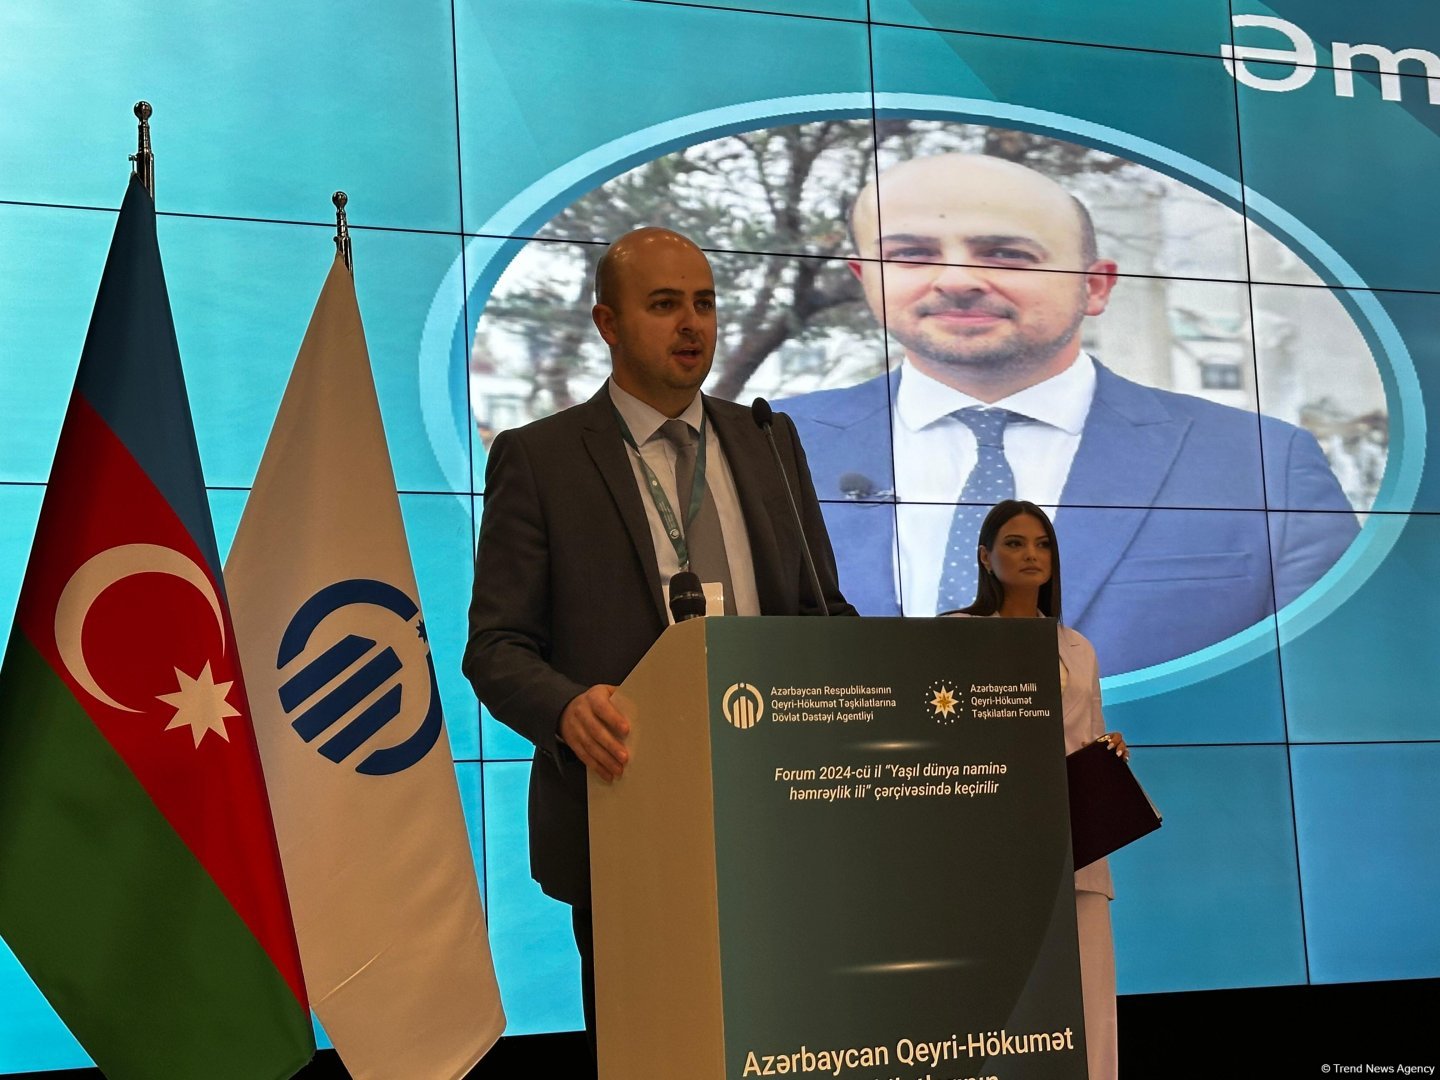 Raising Azerbaijan's Aghali village meets UN SDGs - Special Representative of President